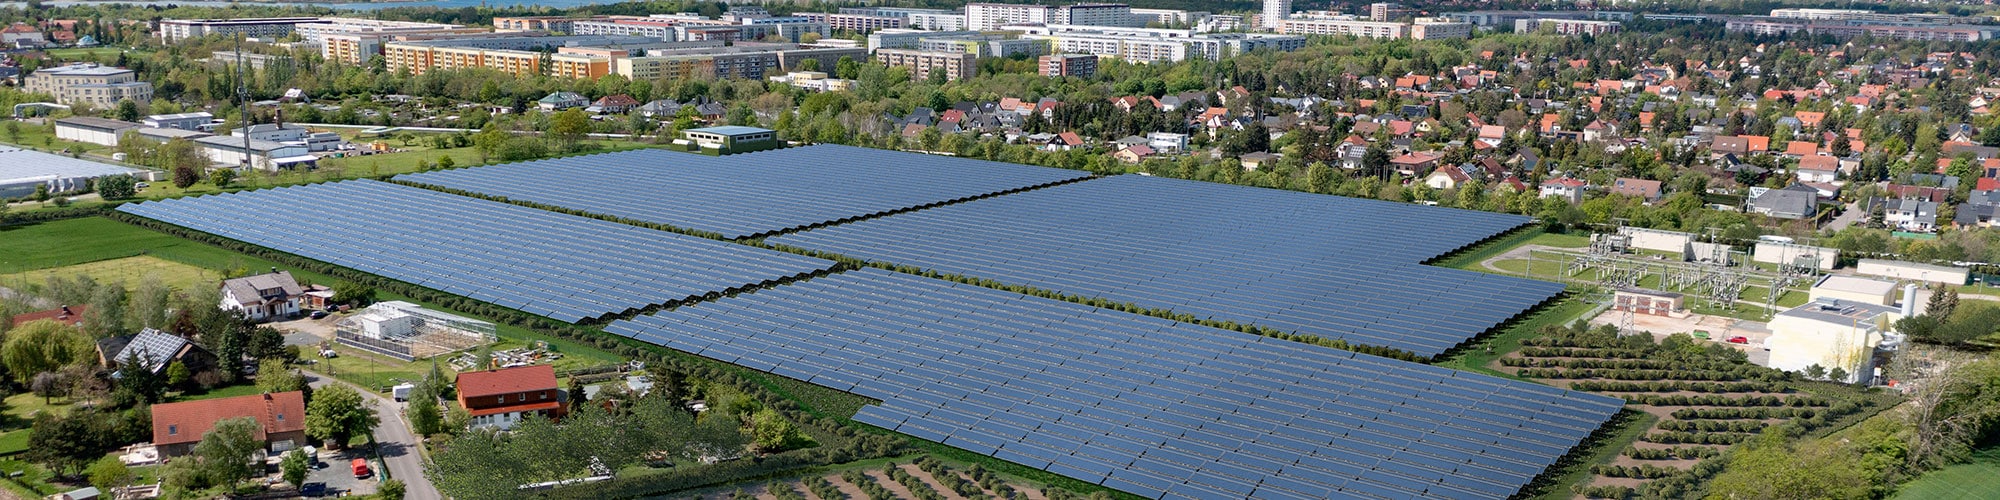 Leipzig - hier entsteht Deutschlands größte Solarthermieanlage